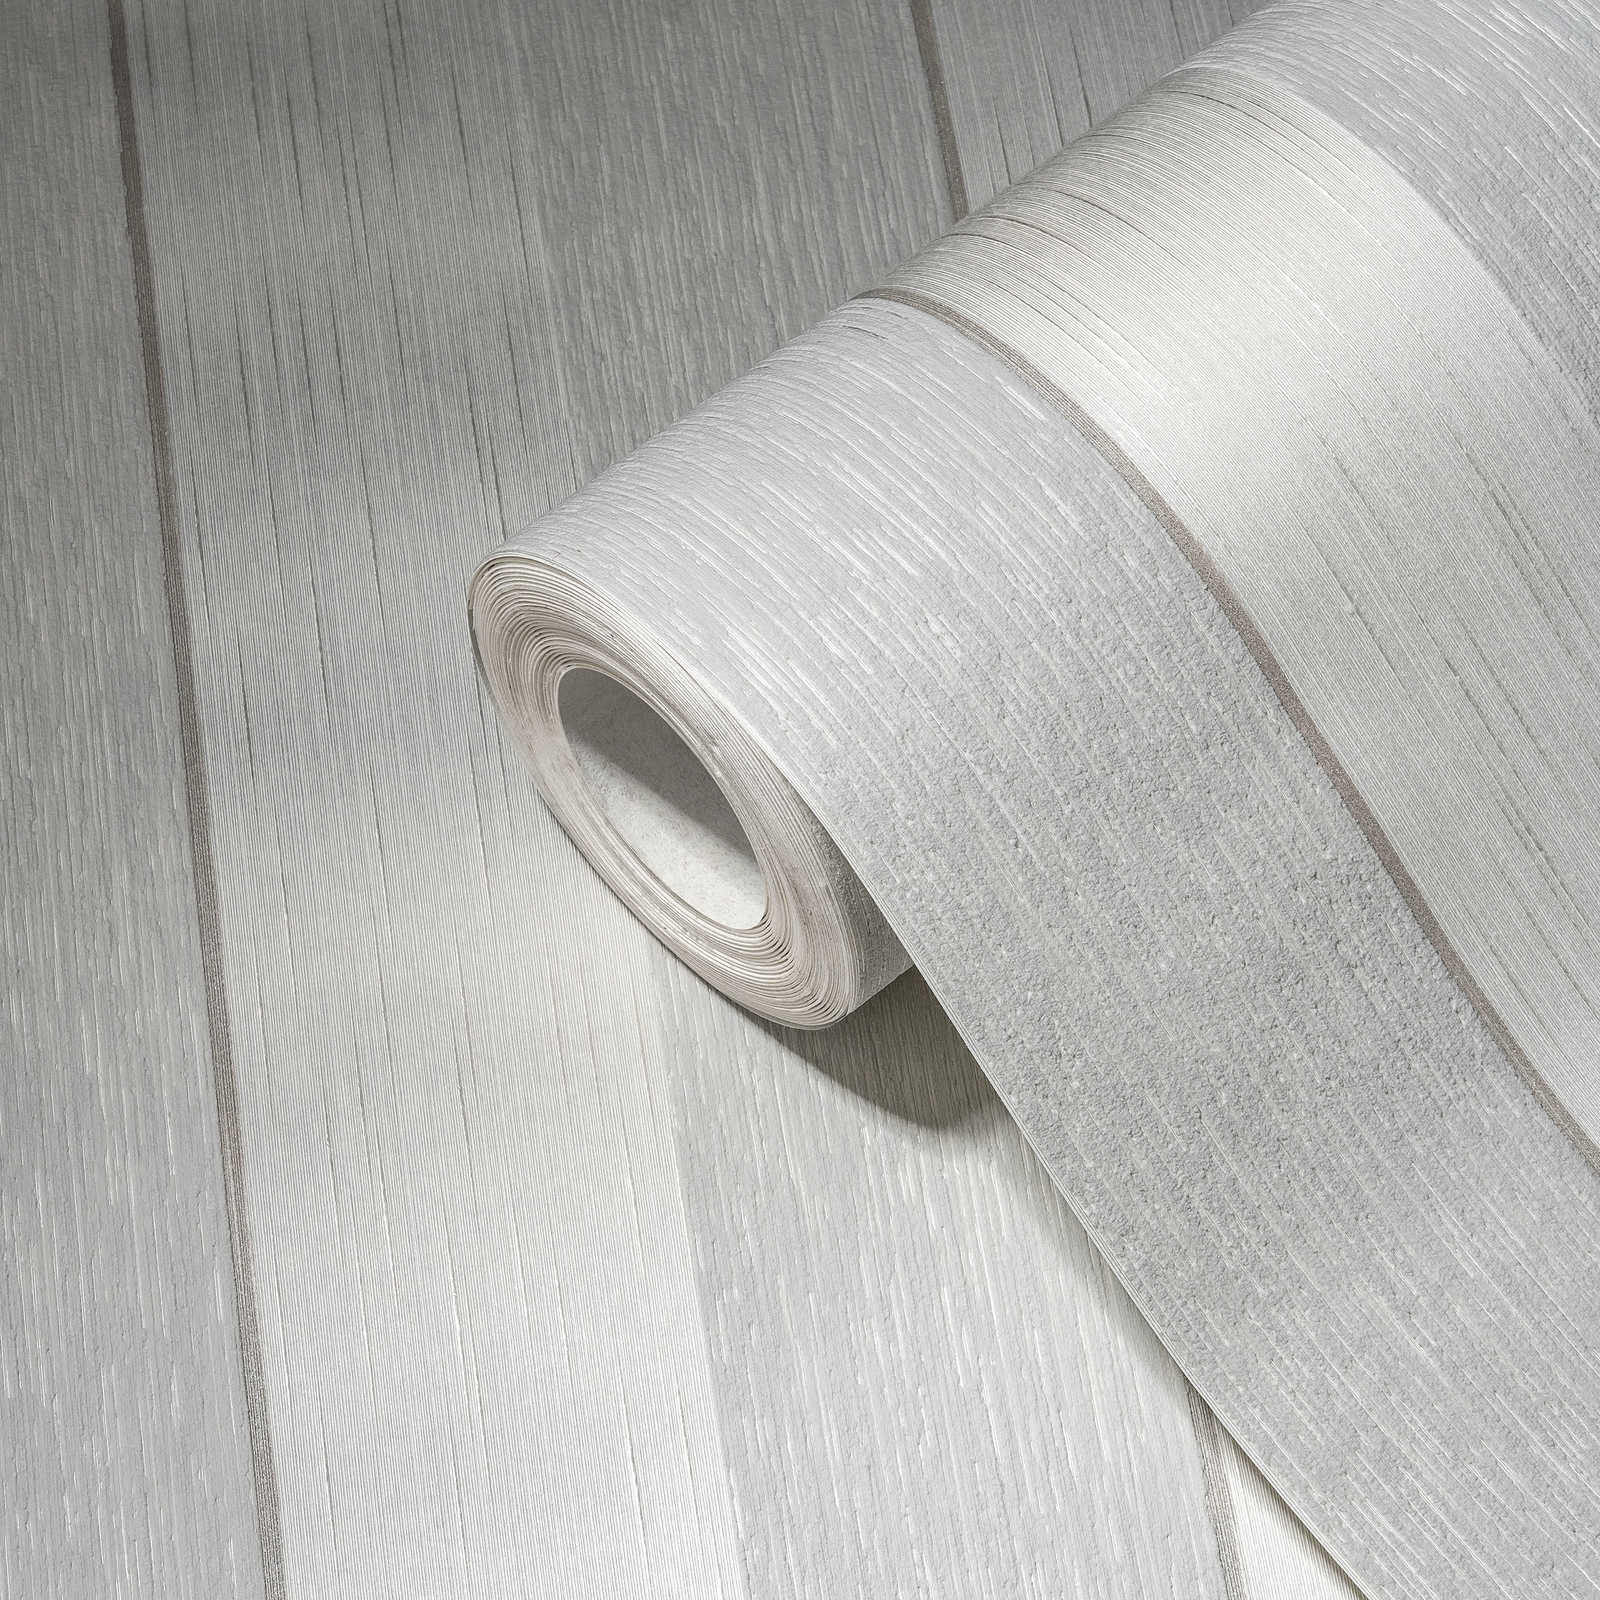             Papier peint rayures effet structuré chiné - gris, blanc
        